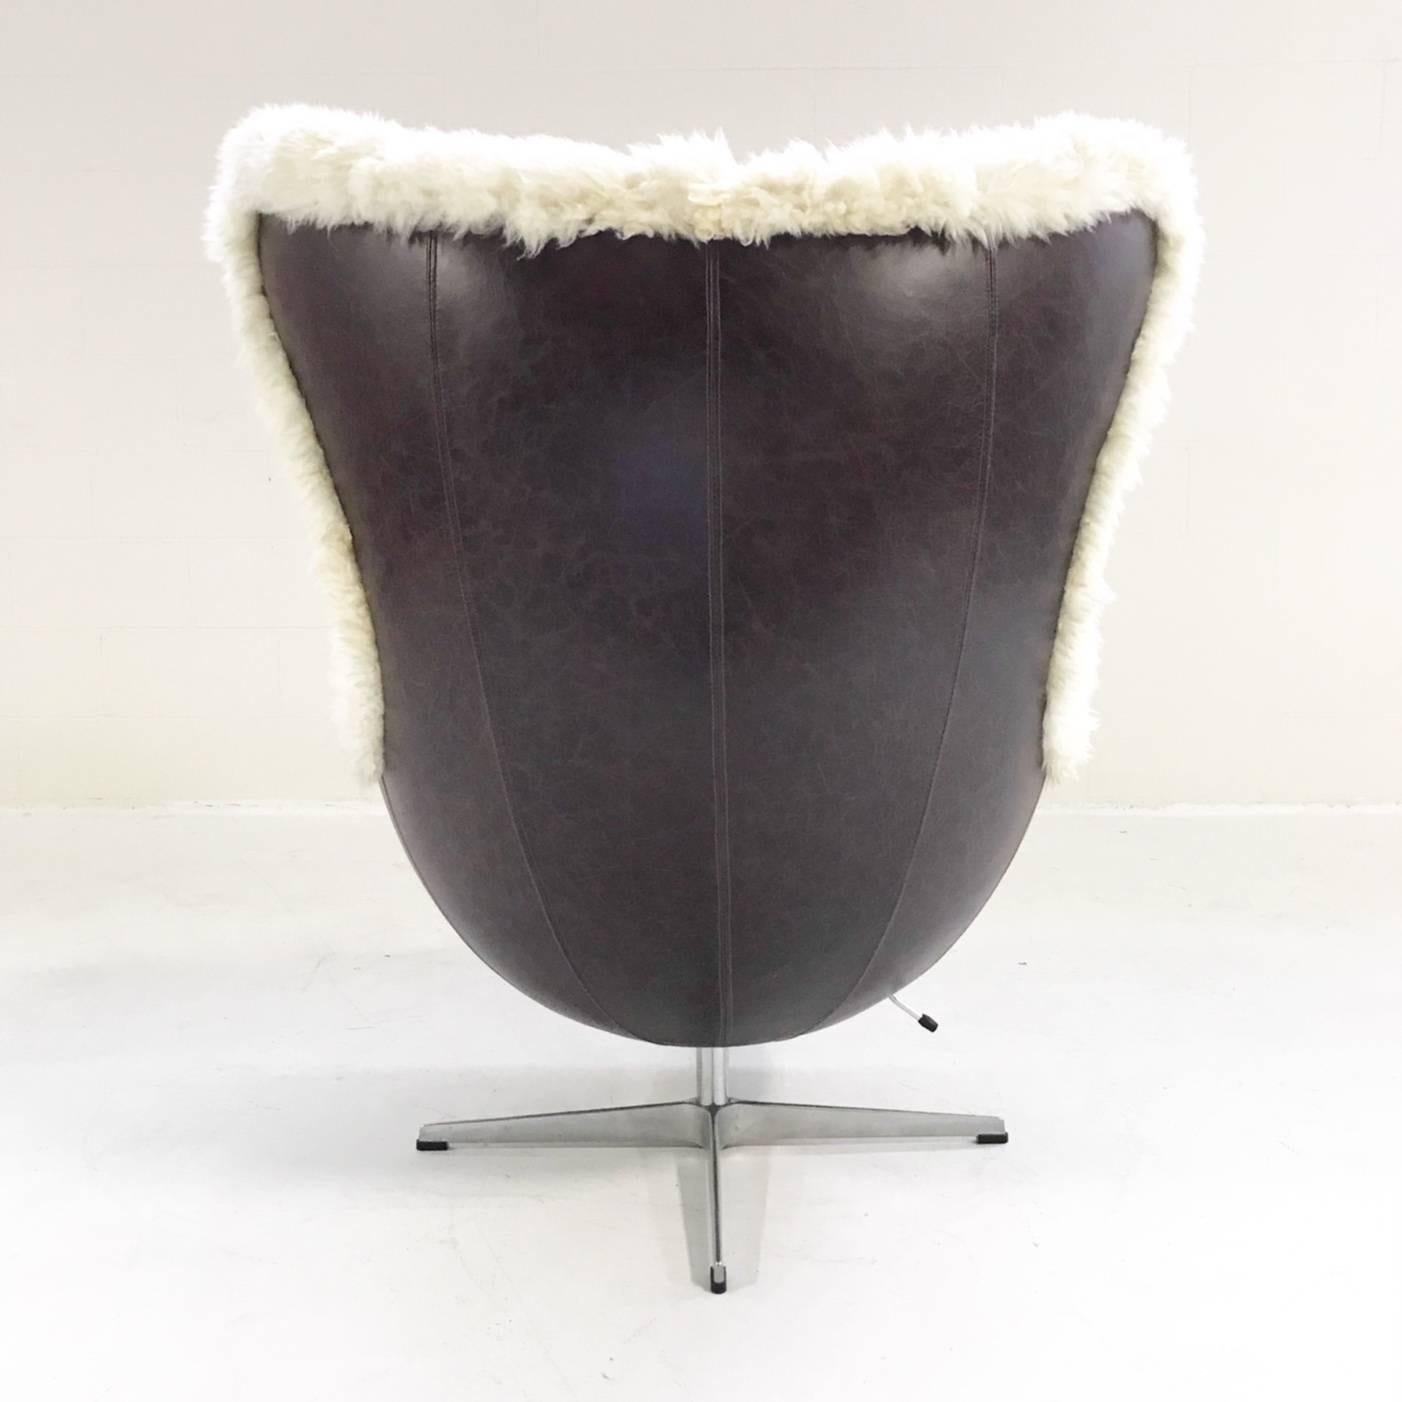 20th Century Arne Jacobsen for Fritz Hansen Egg Chair Restored in Sheepskin and Leather